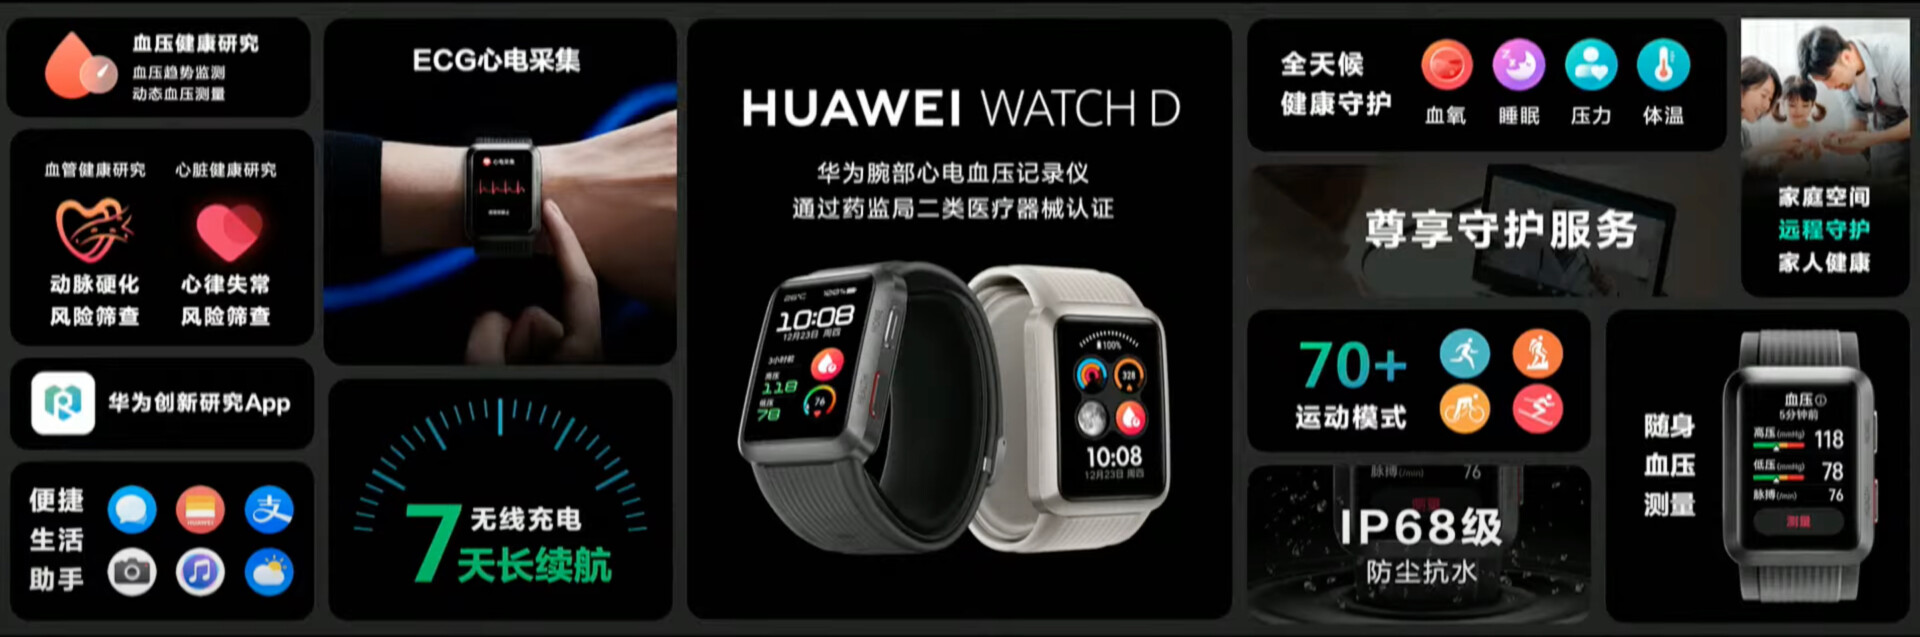 Huawei Watch D Specs